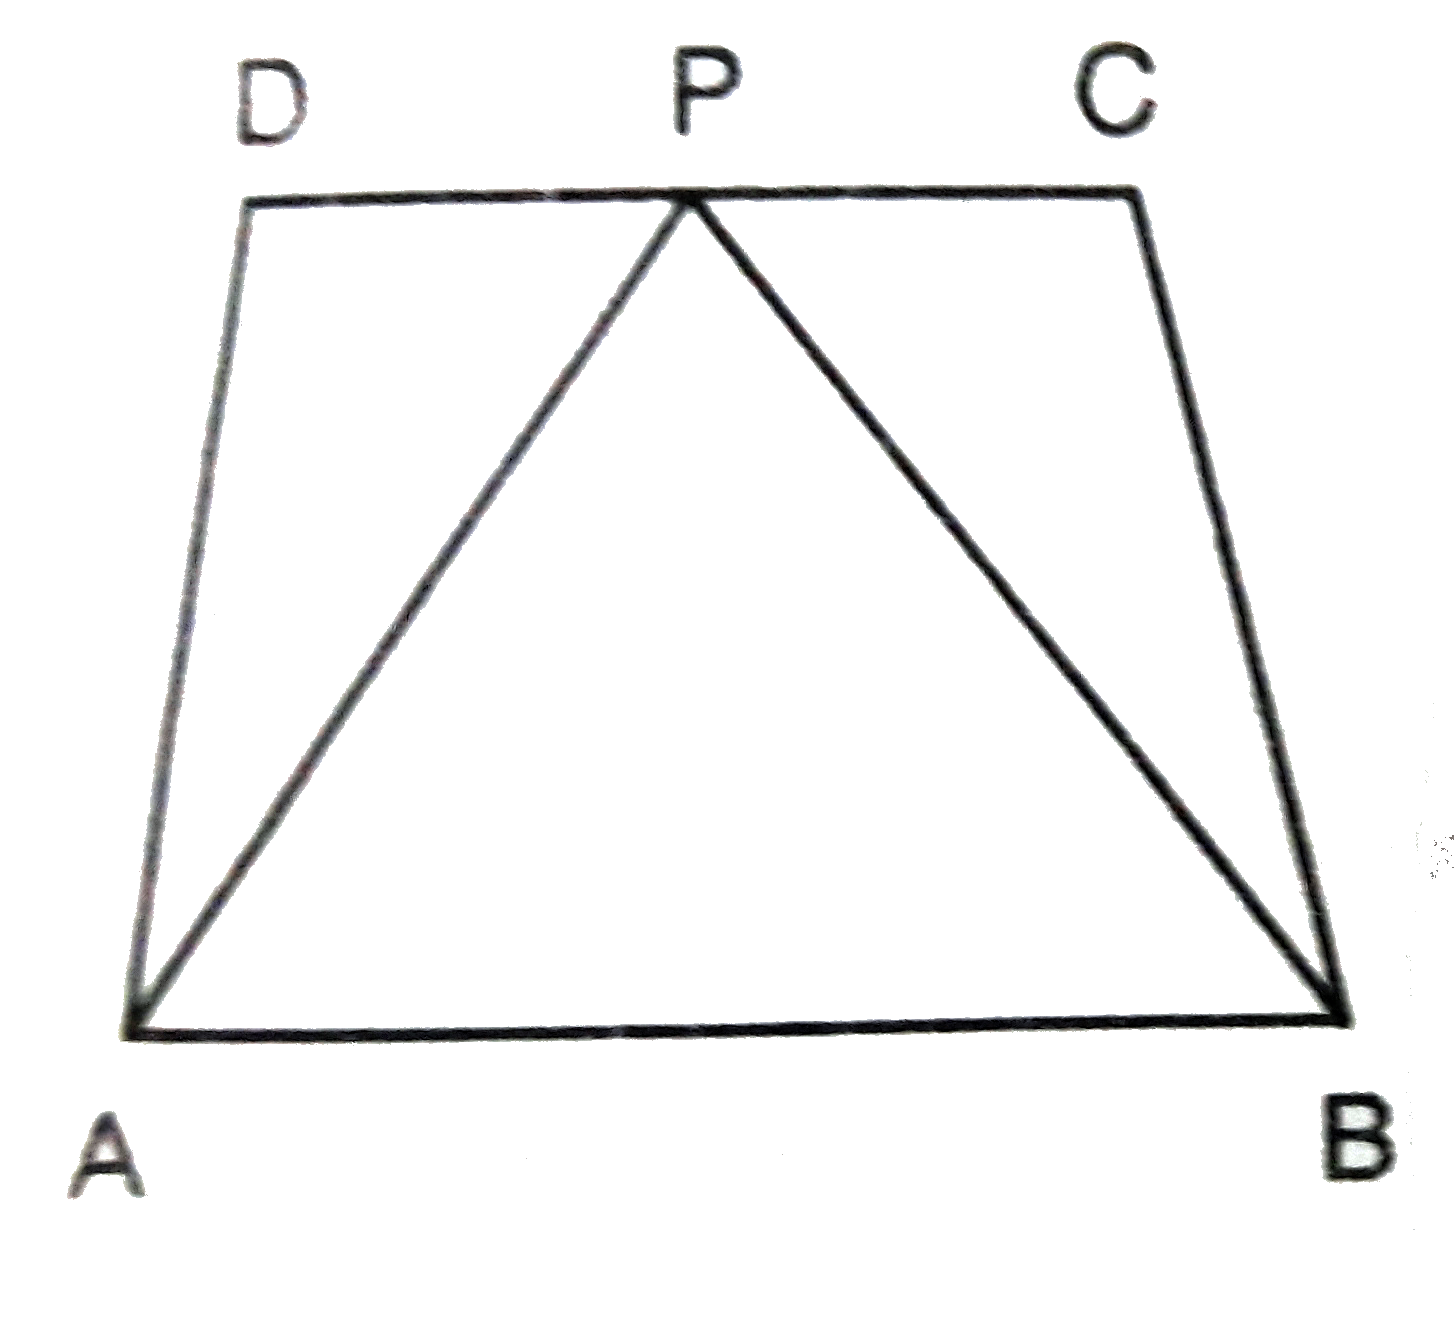 आकृति में आकृति एक ही आधार तथा समान समांतर रेखाओं के बीच स्थित है :